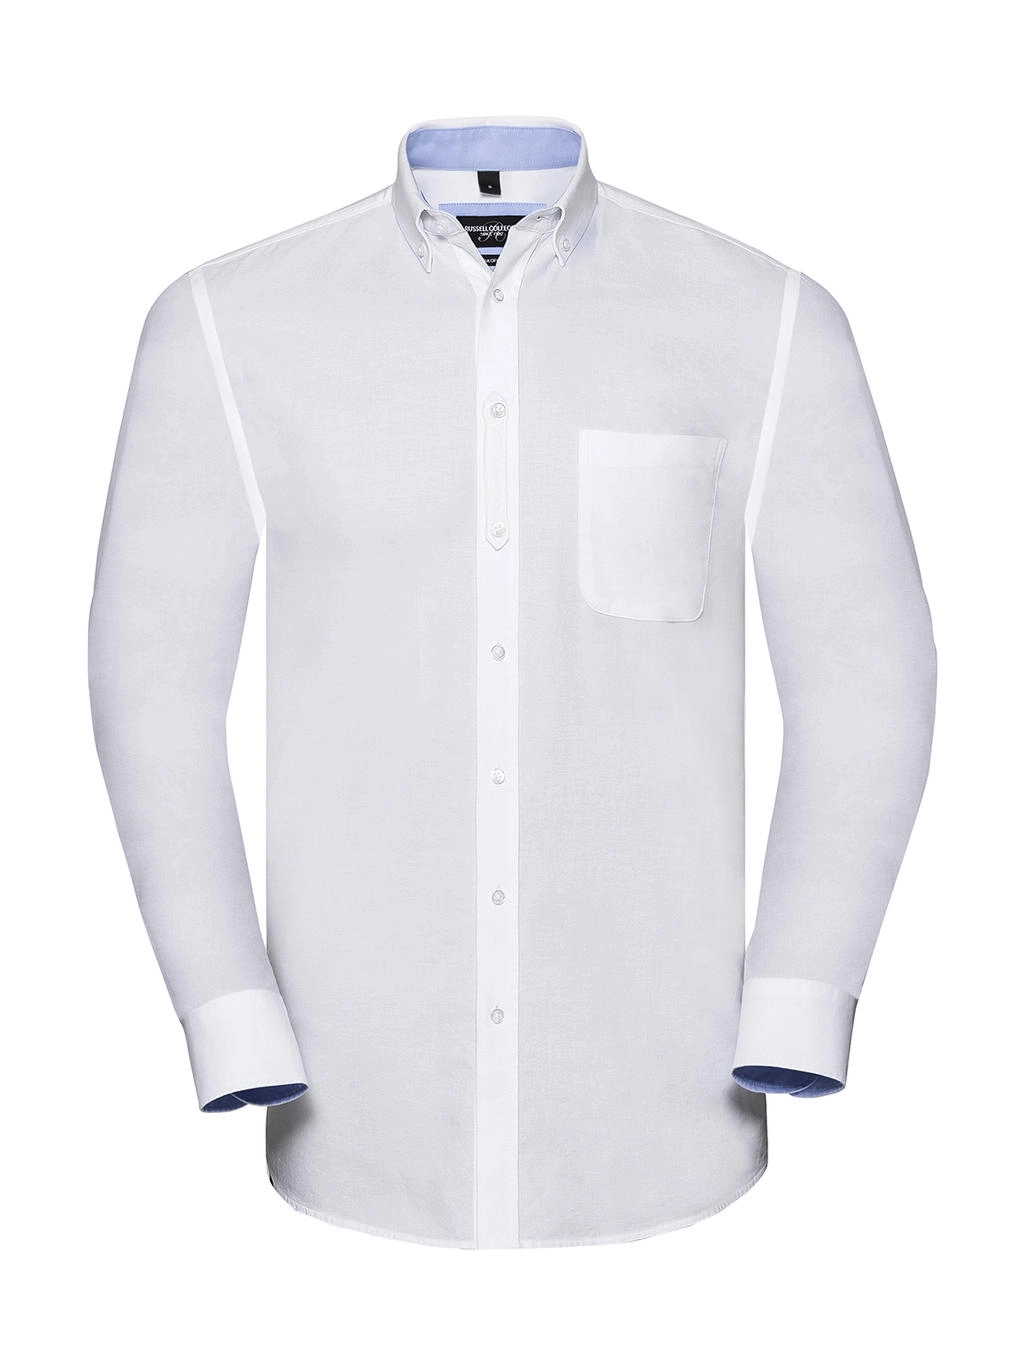 Men`s LS Tailored Washed Oxford Shirt zum Besticken und Bedrucken in der Farbe White/Oxford Blue mit Ihren Logo, Schriftzug oder Motiv.